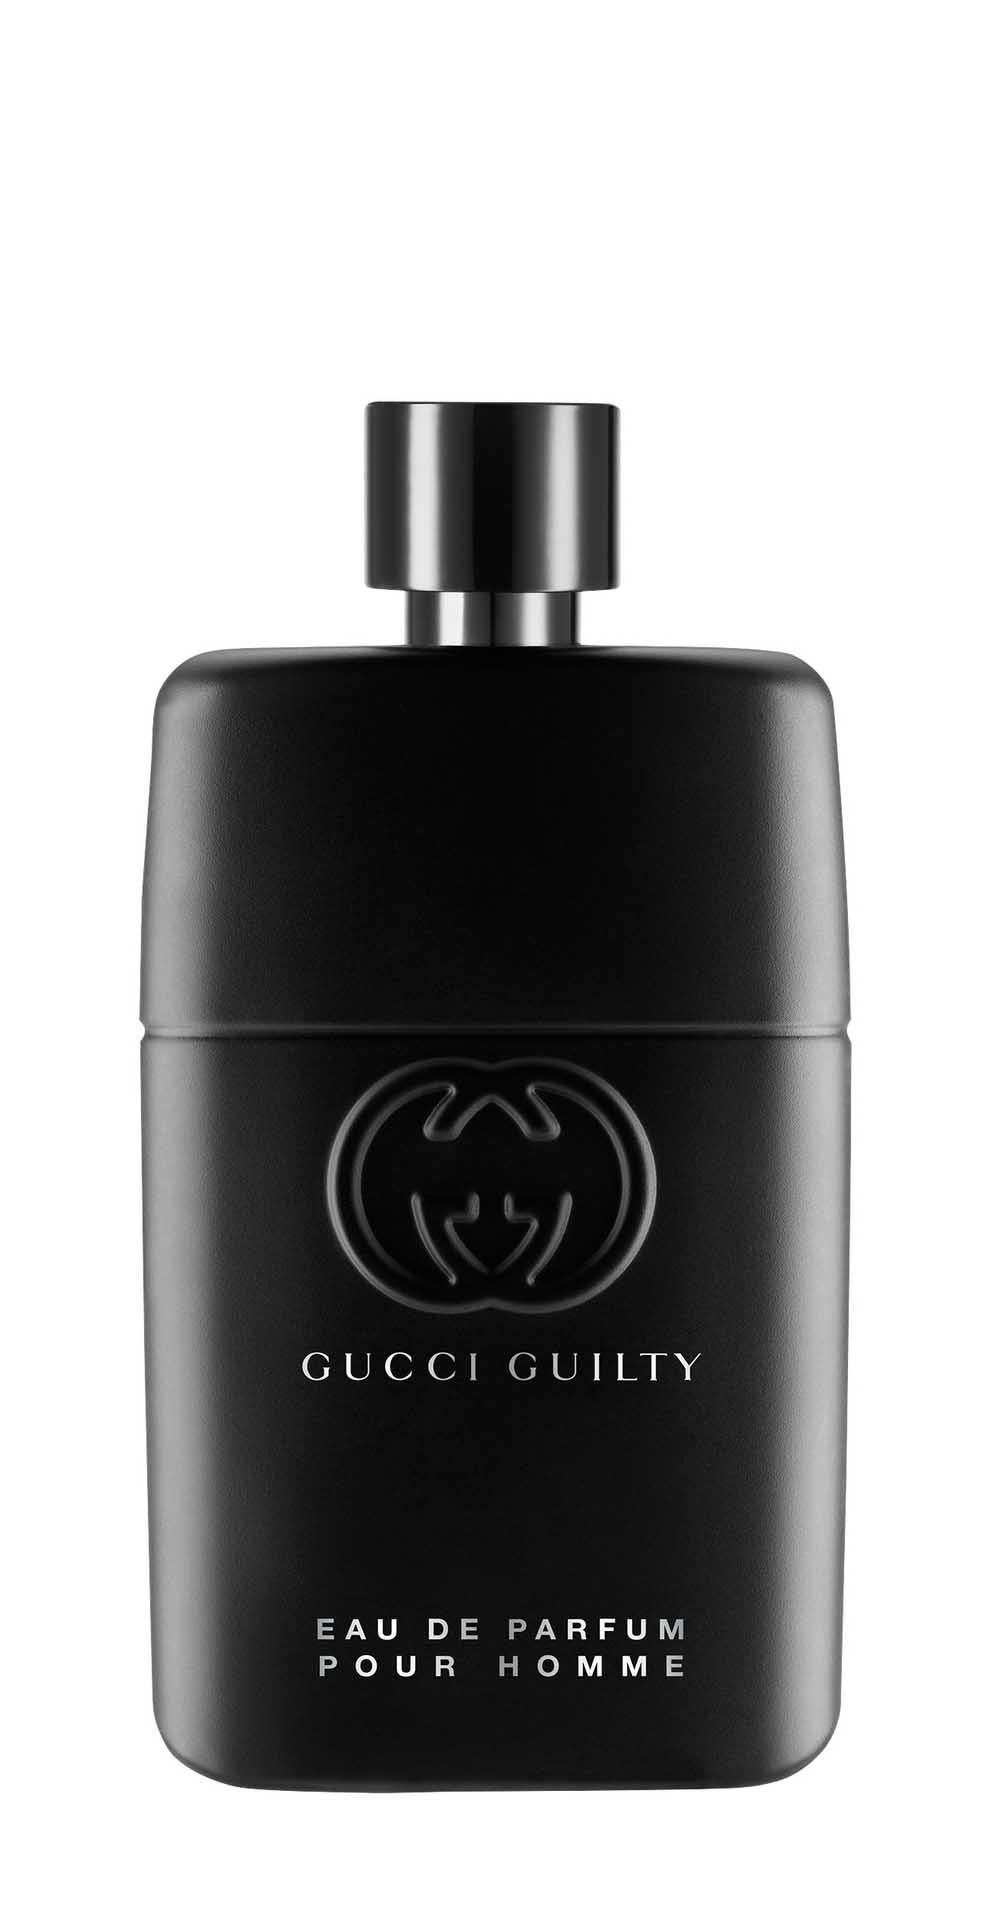 Парфюмерная вода Gucci Guilty Pour Homme Eau de Parfum для мужчин, 90 мл gucci guilty eau de parfum